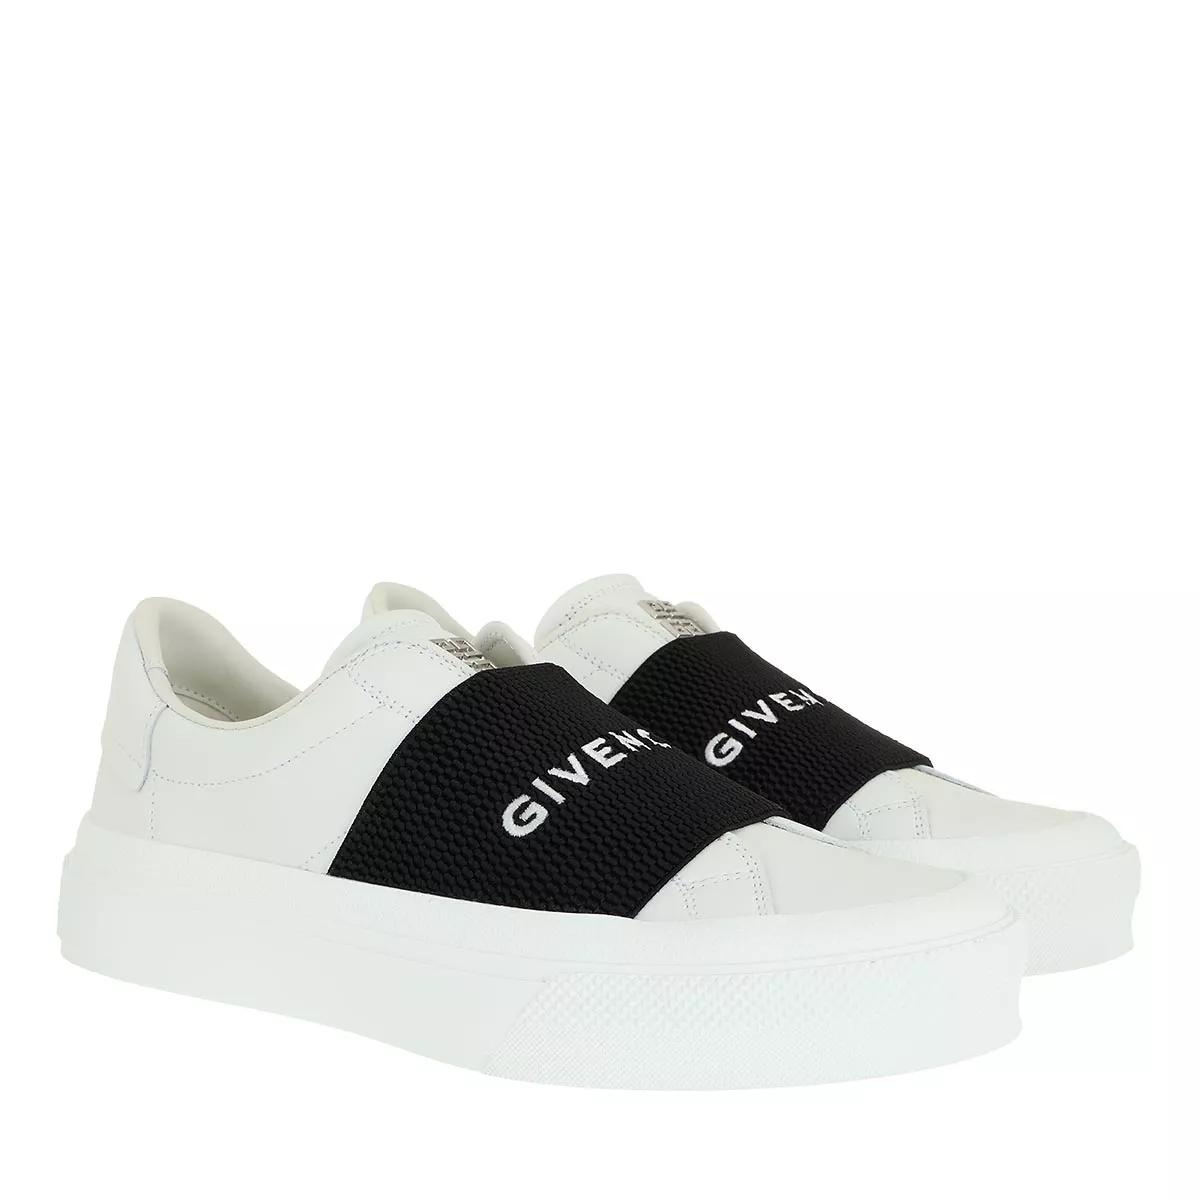 Givenchy Sneakers - Slip On Sneakers - Gr. 36 (EU) - in Weiß - für Damen von Givenchy